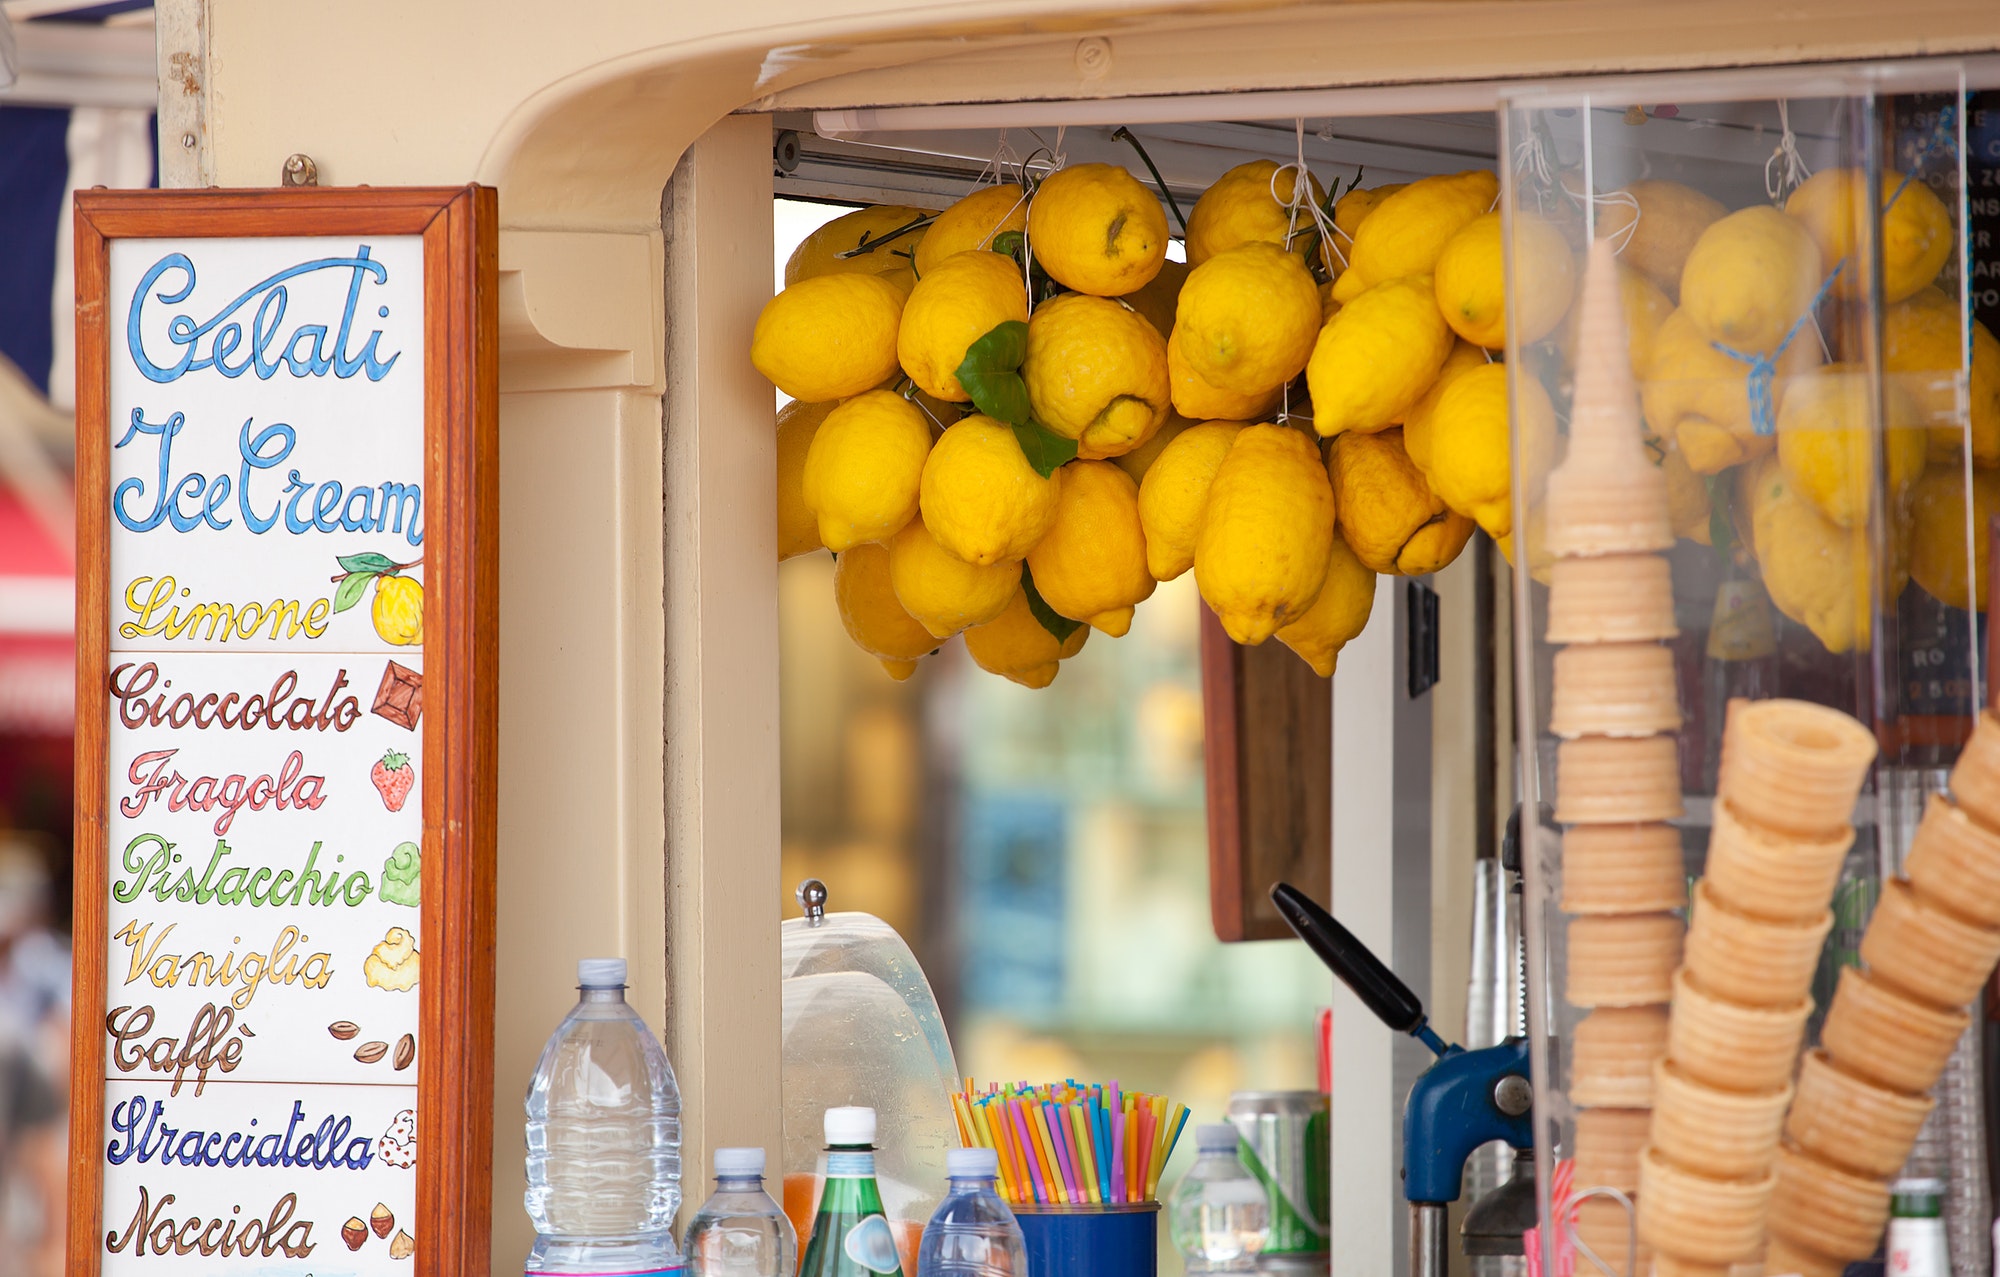 Lemon ice cream kiosk in Capri